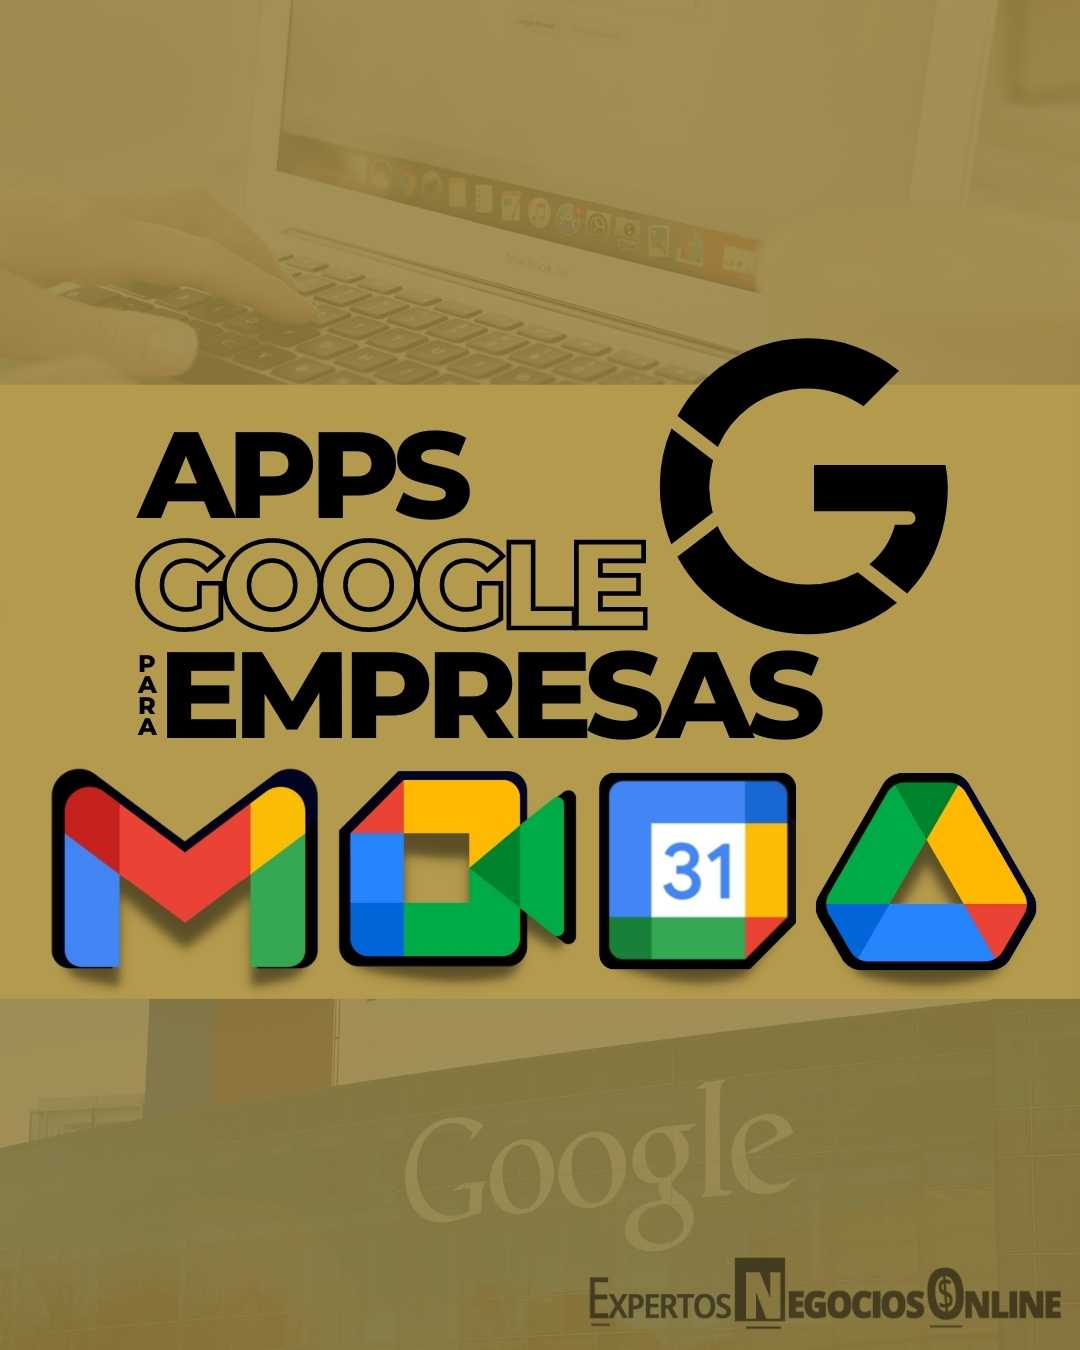 herramientas de Google para empresas - Apps de Google para negocios